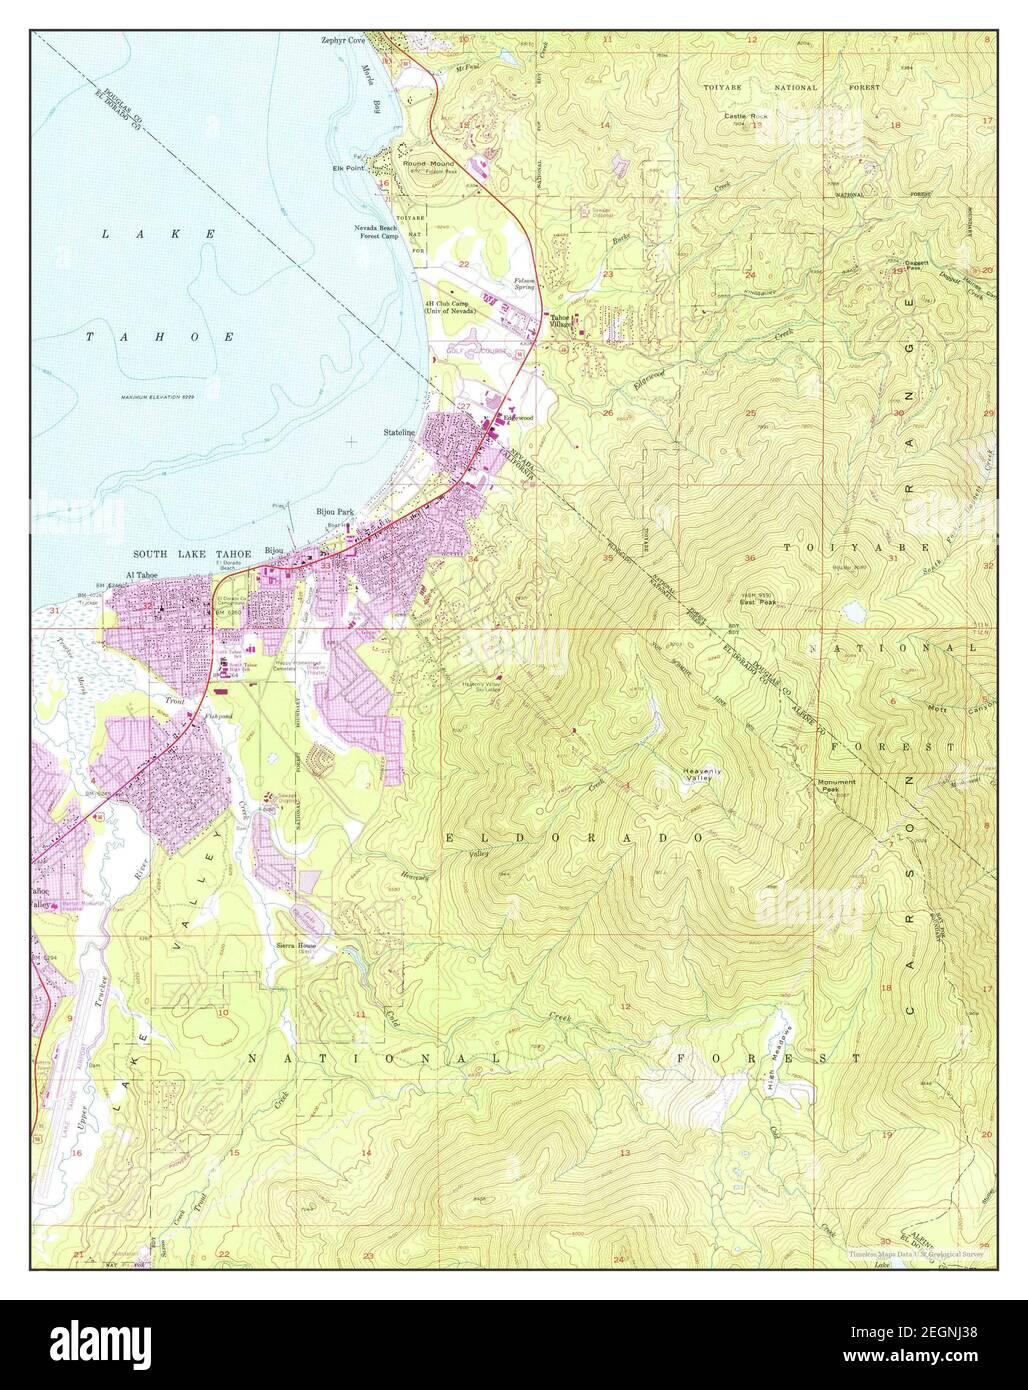 South Lake Tahoe, Californie, carte 1955, 1:24000, États-Unis d'Amérique par Timeless Maps, données U.S. Geological Survey Banque D'Images